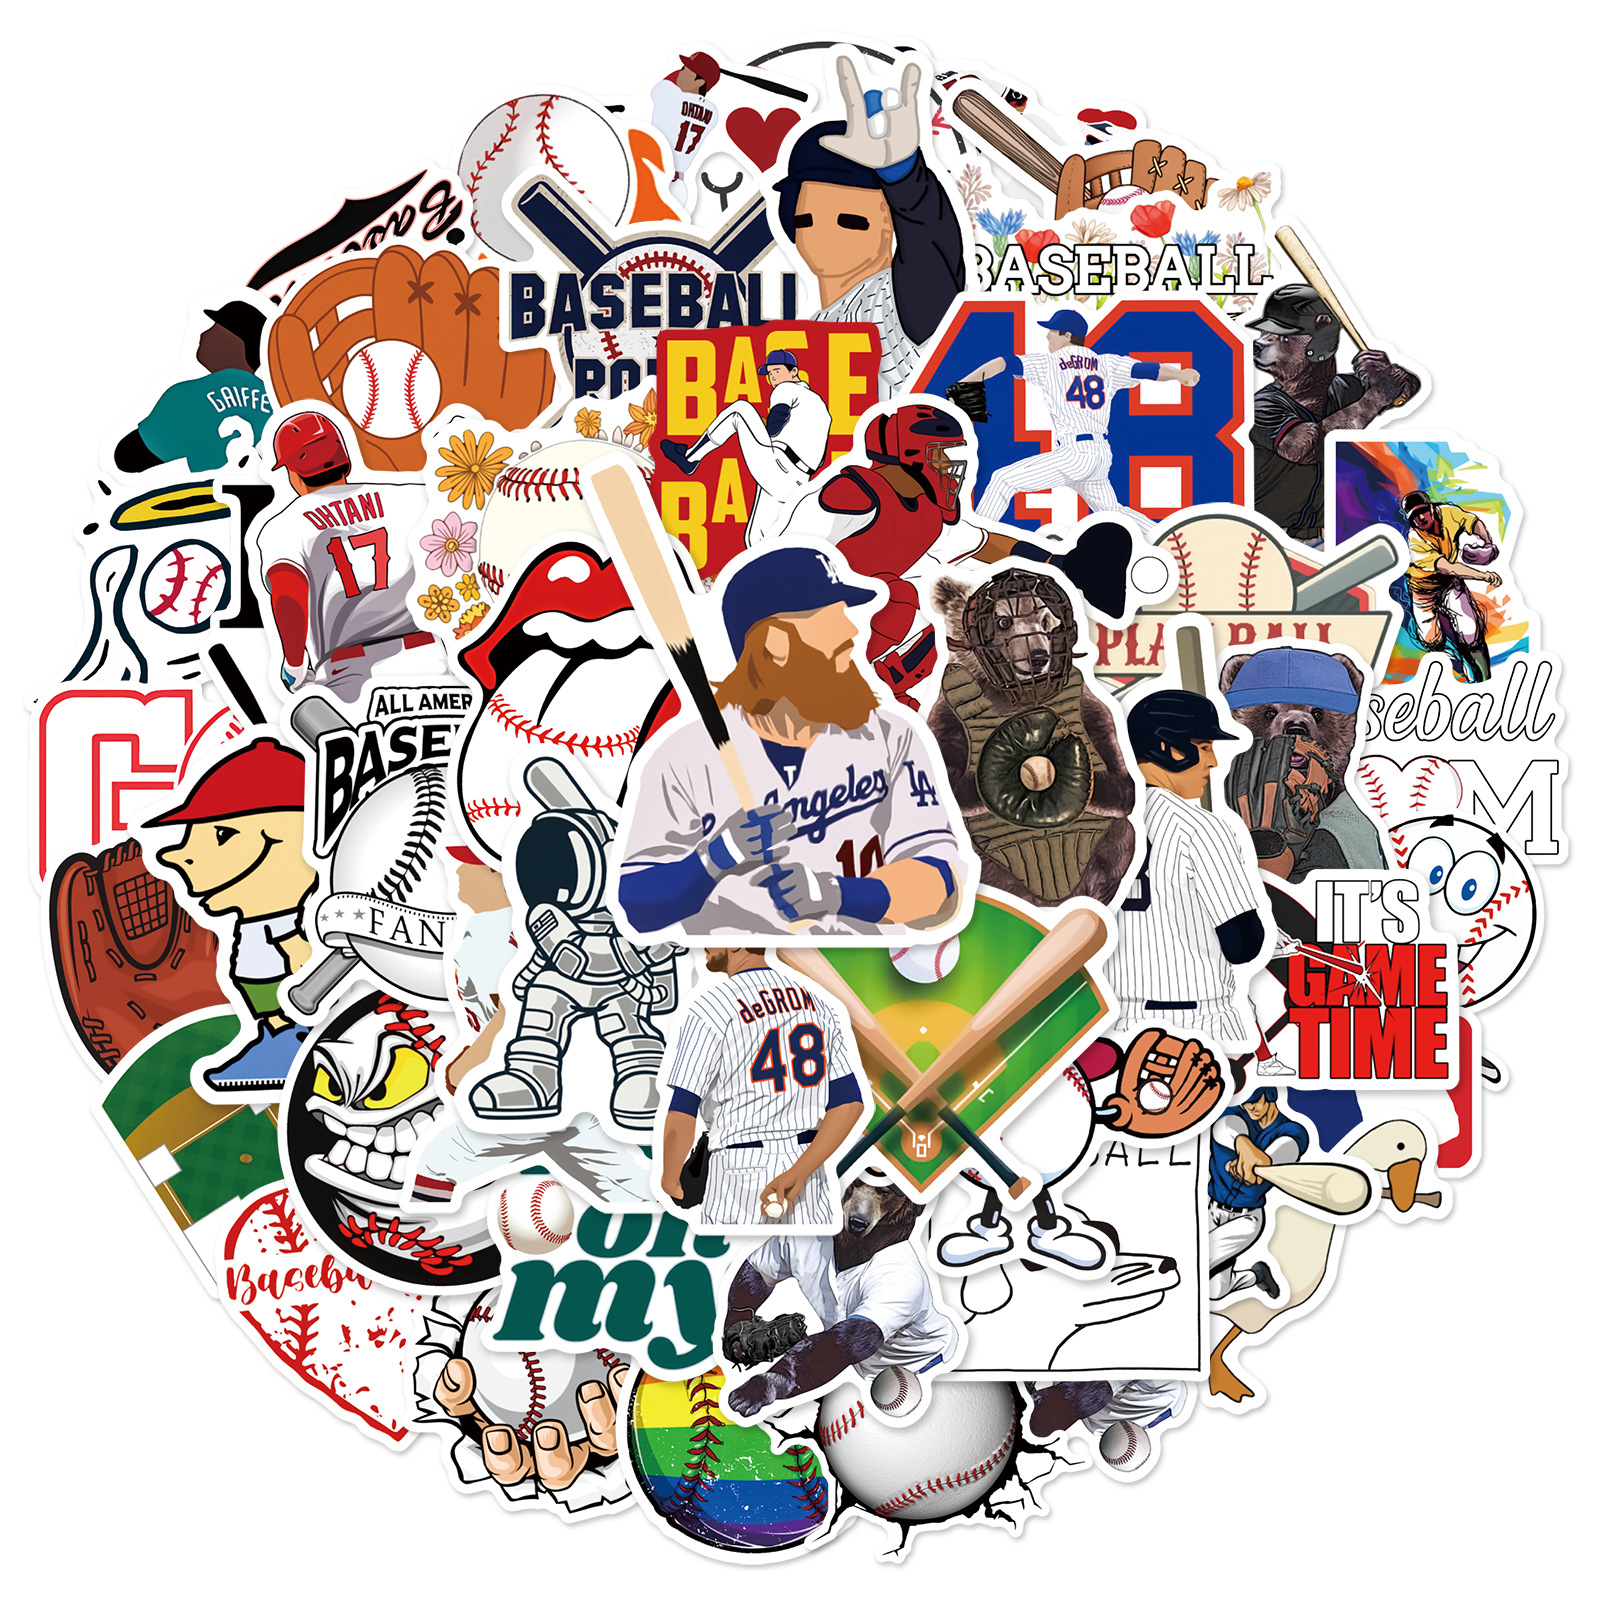  бейсбол Major League MLB большой Lee g Professional Baseball Koshien бейсбол лампочка для софтбола лампочка наклейка стикер 50 листов HQ